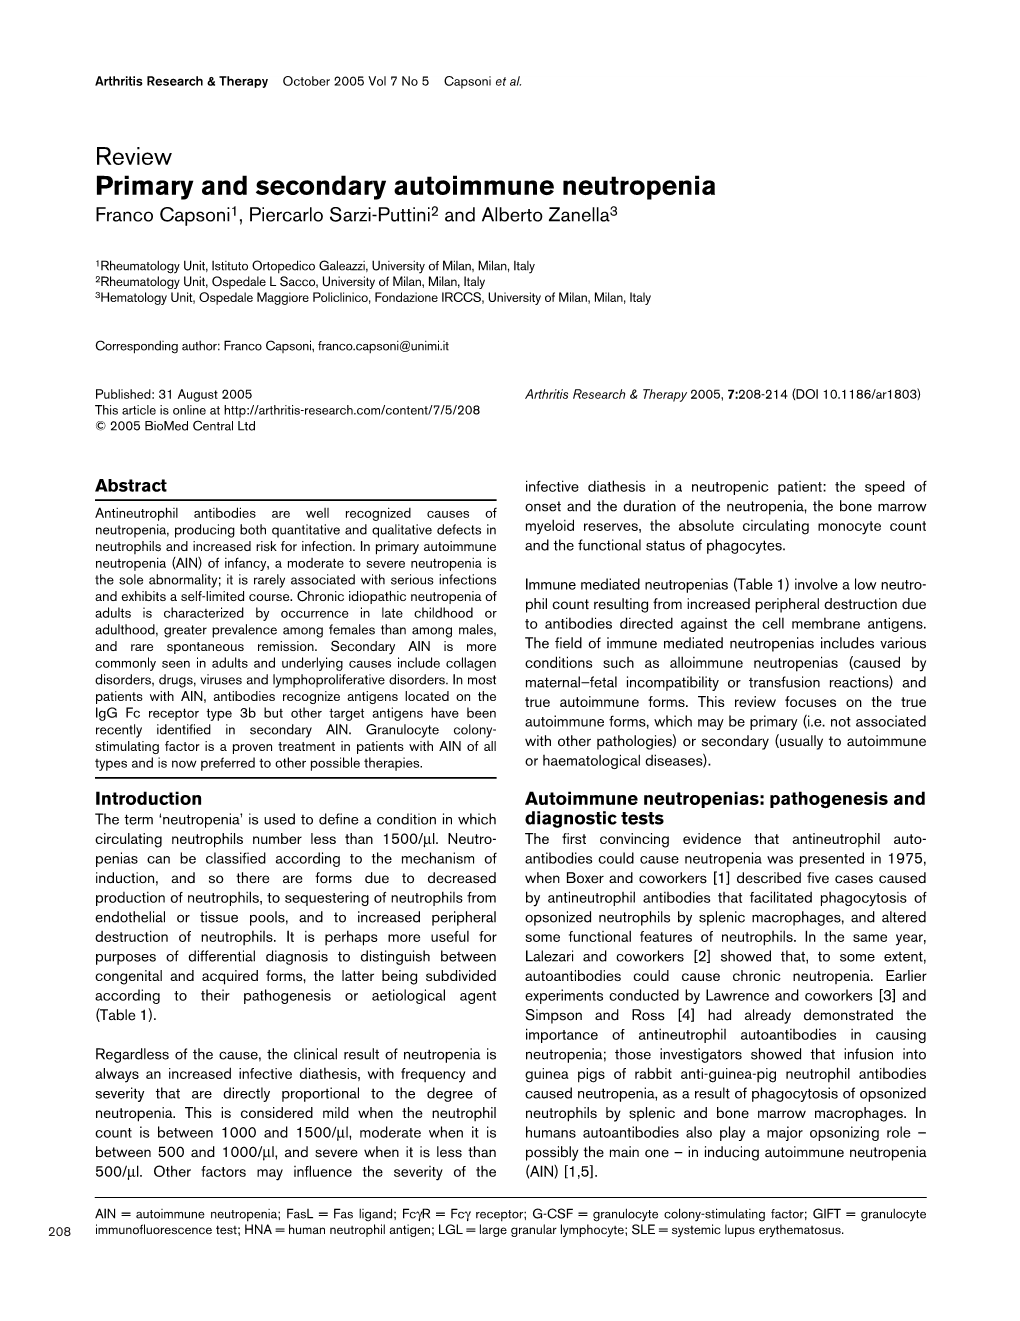 Primary and Secondary Autoimmune Neutropenia Franco Capsoni1, Piercarlo Sarzi-Puttini2 and Alberto Zanella3